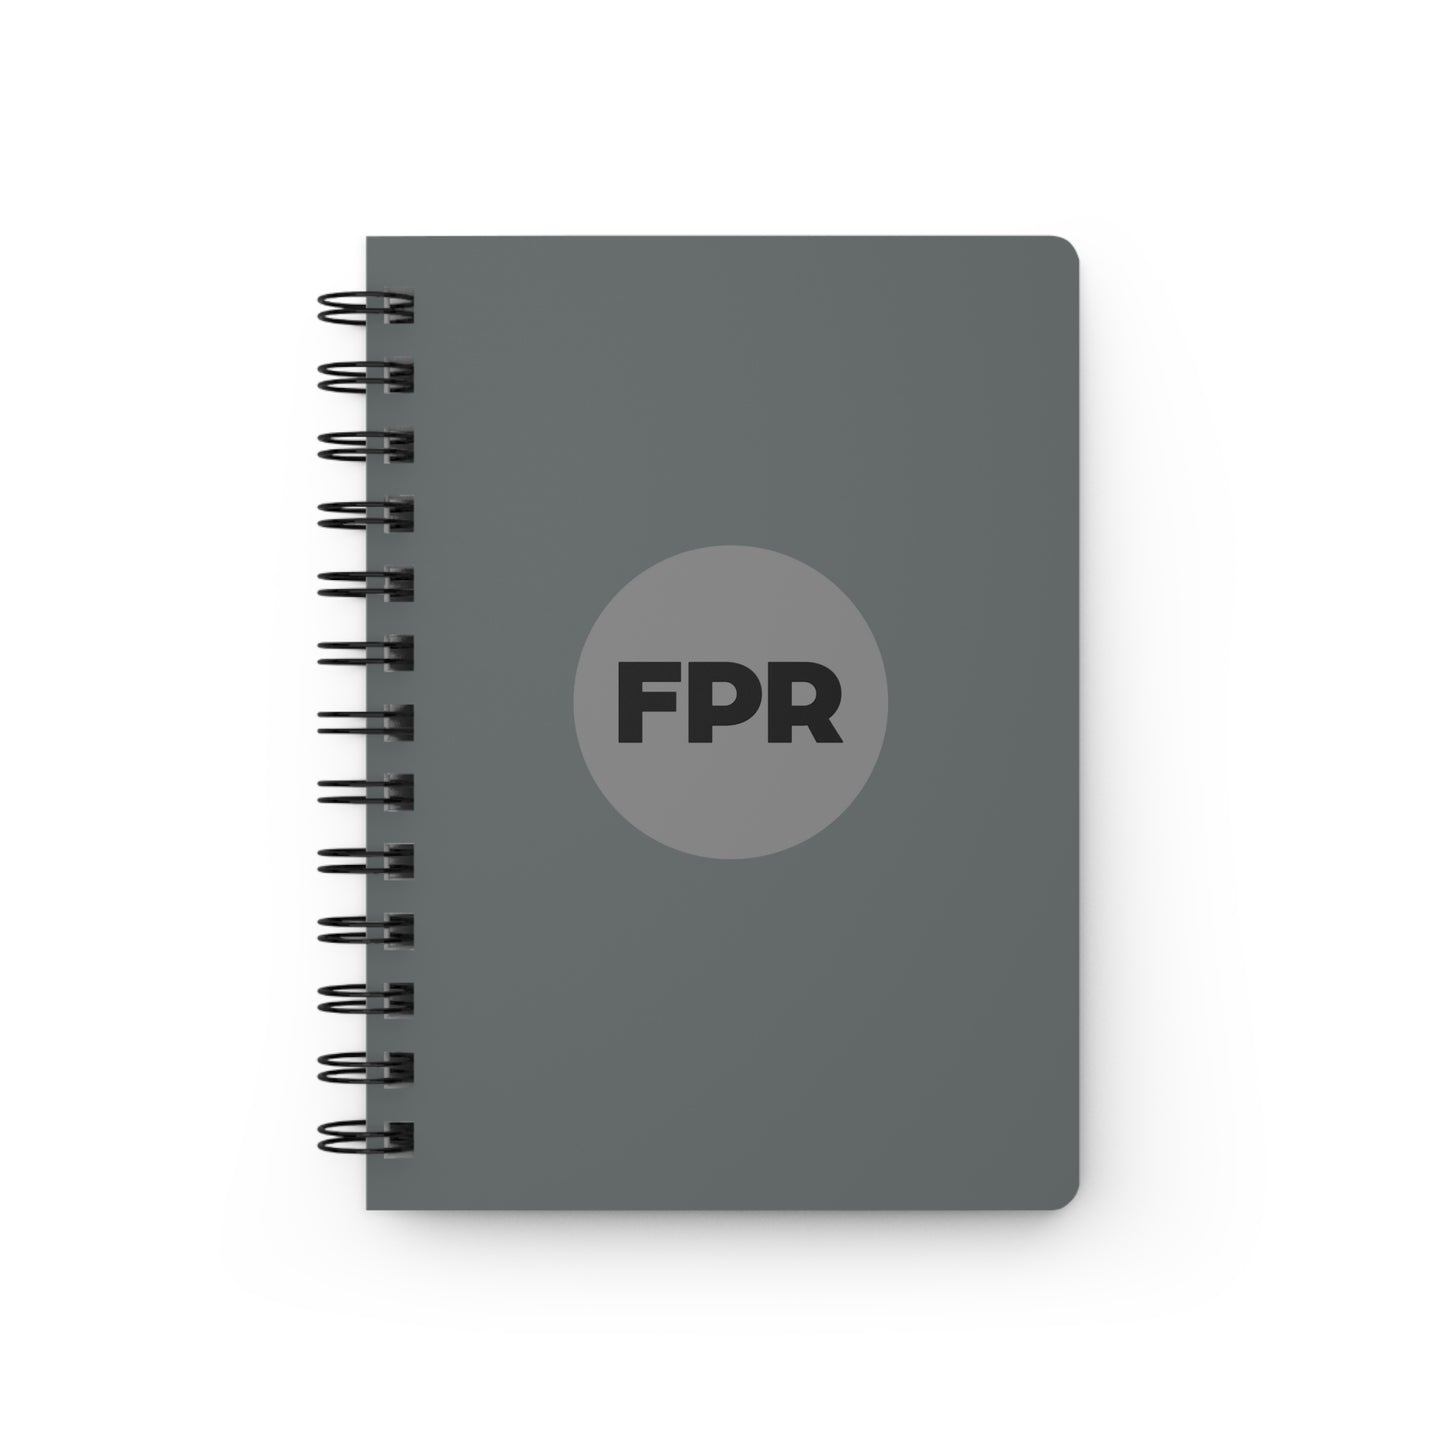 FPR Journal